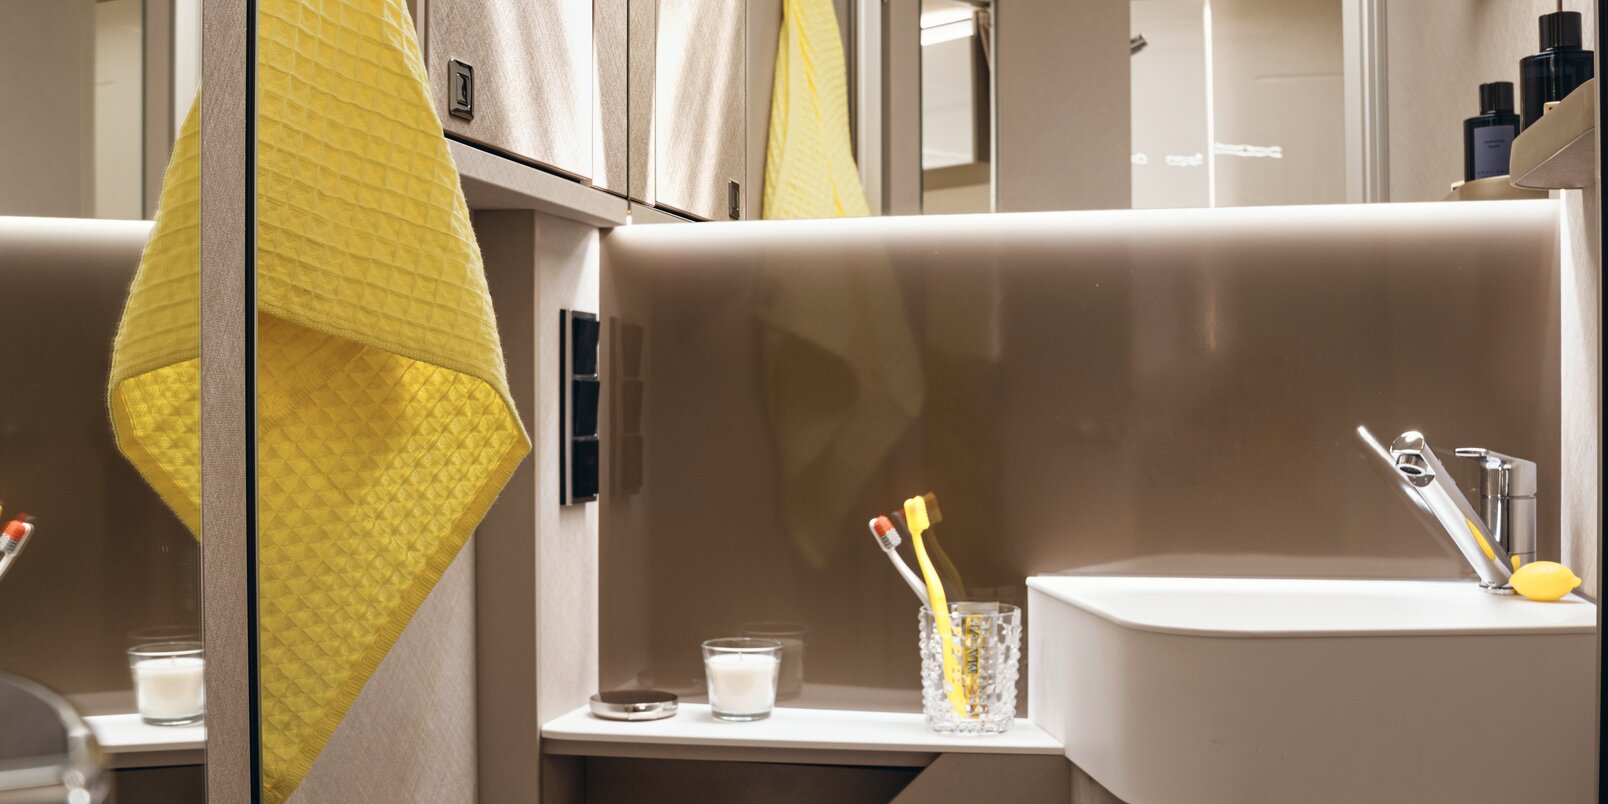 Spiegel, wastafel, opbergruimte, gele handdoek en toilet in de badkamer van de HYMER Tramp S camper